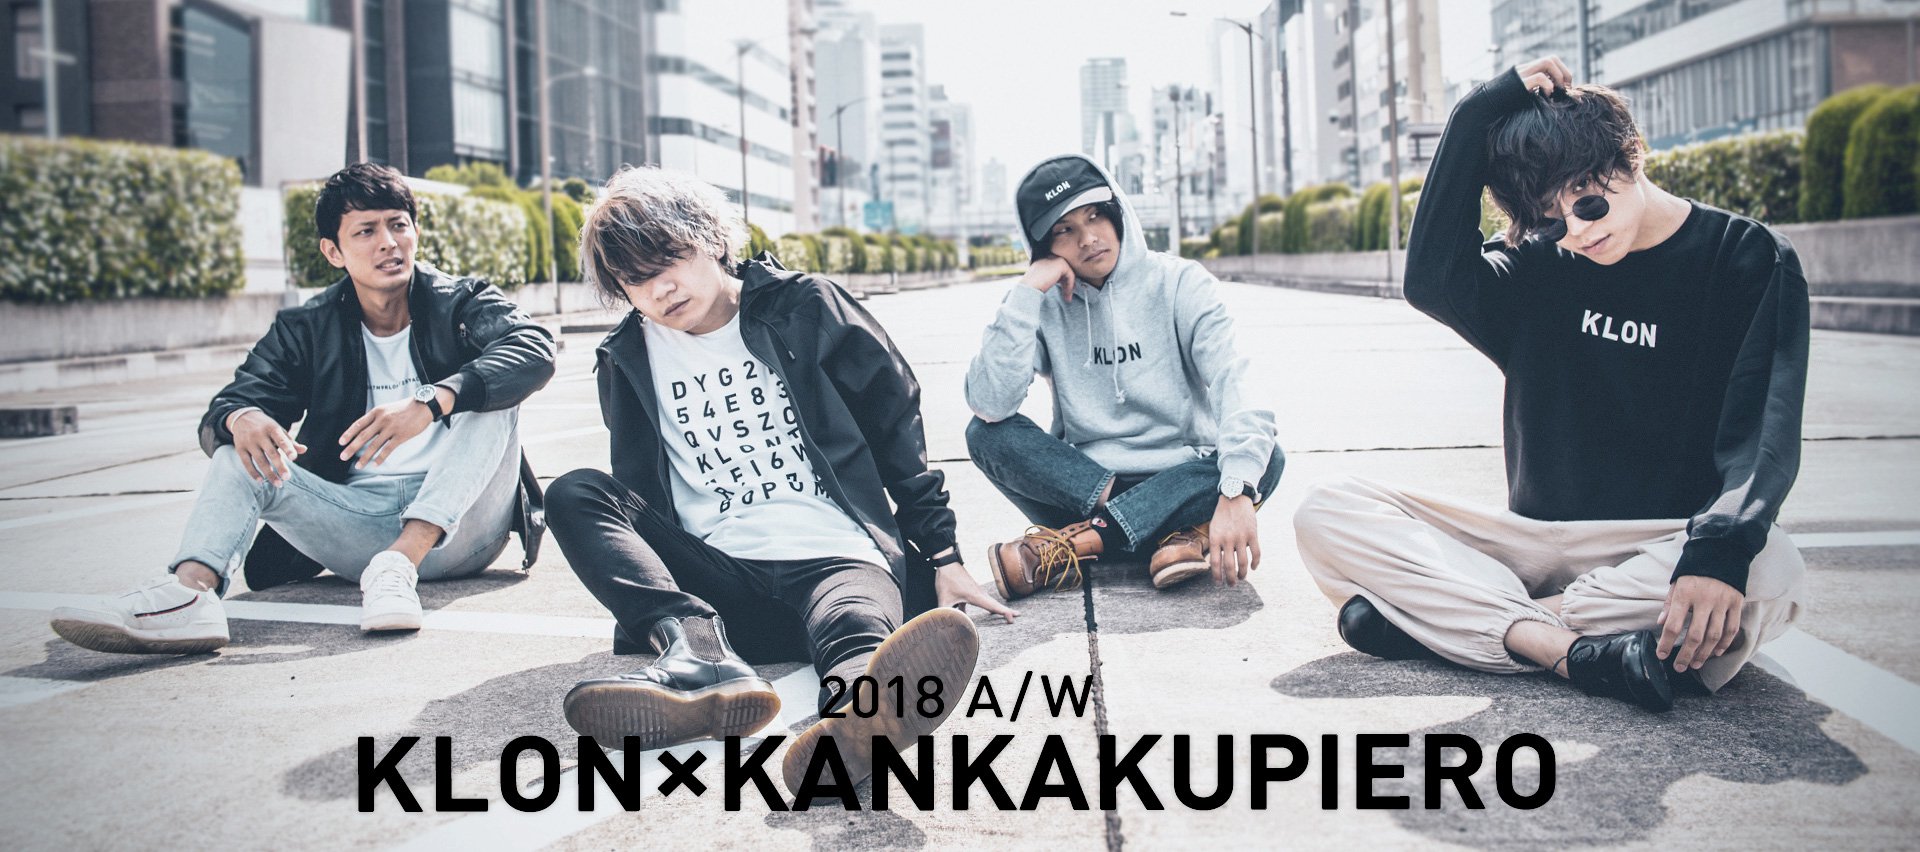 2018A/W KLONKANKAKUPIERO